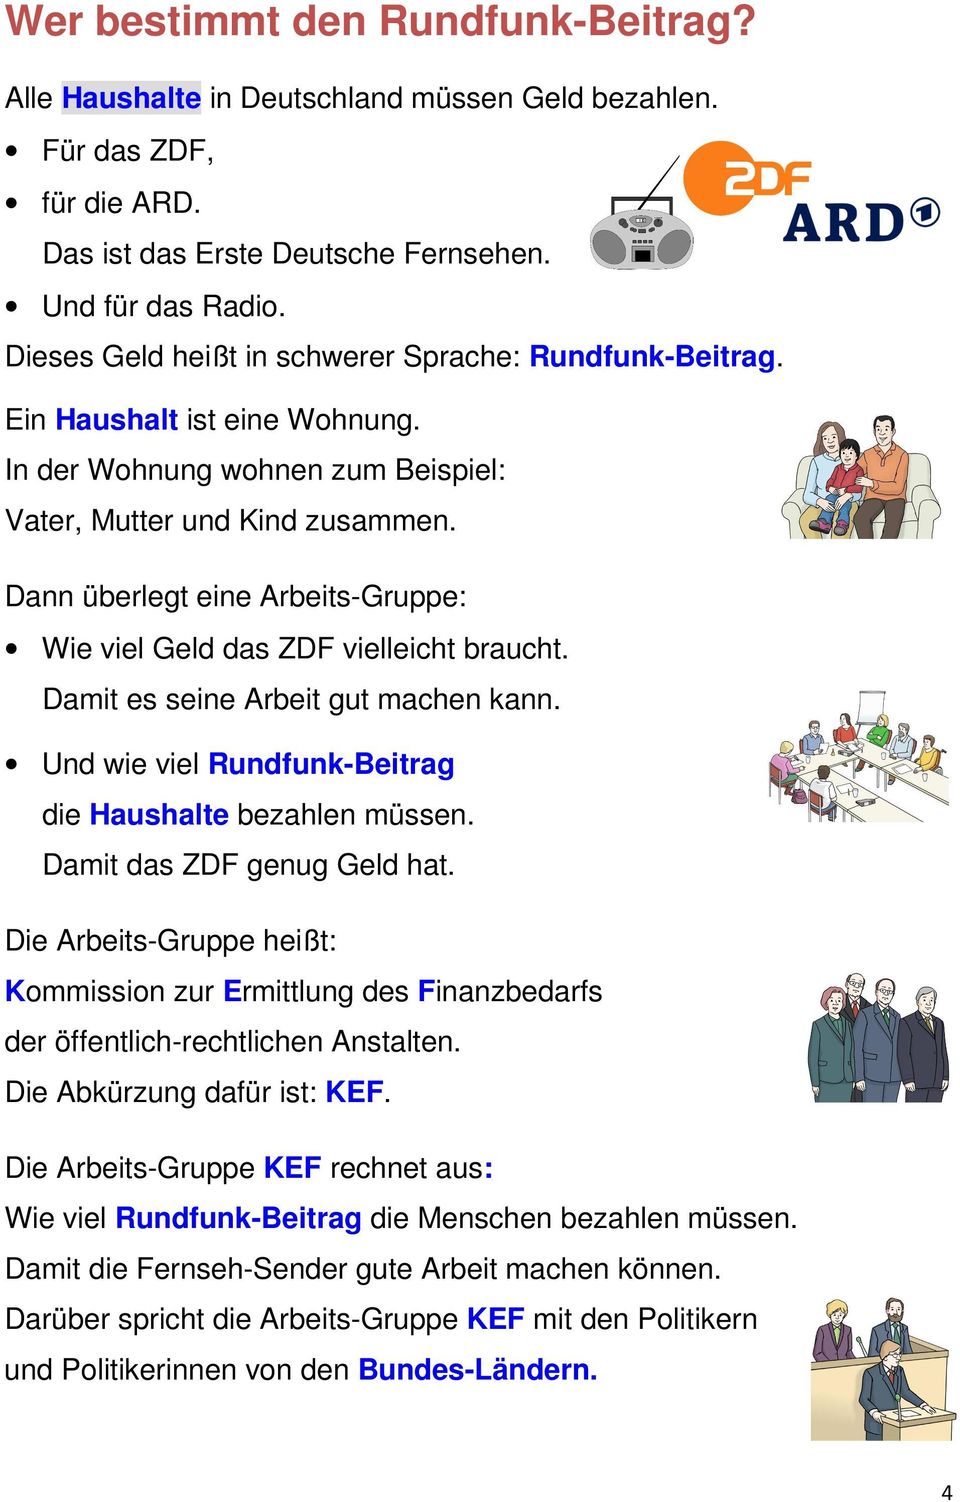 Dann überlegt eine Arbeits-Gruppe: Wie viel Geld das ZDF vielleicht braucht. Damit es seine Arbeit gut machen kann. Und wie viel Rundfunk-Beitrag die Haushalte bezahlen müssen.